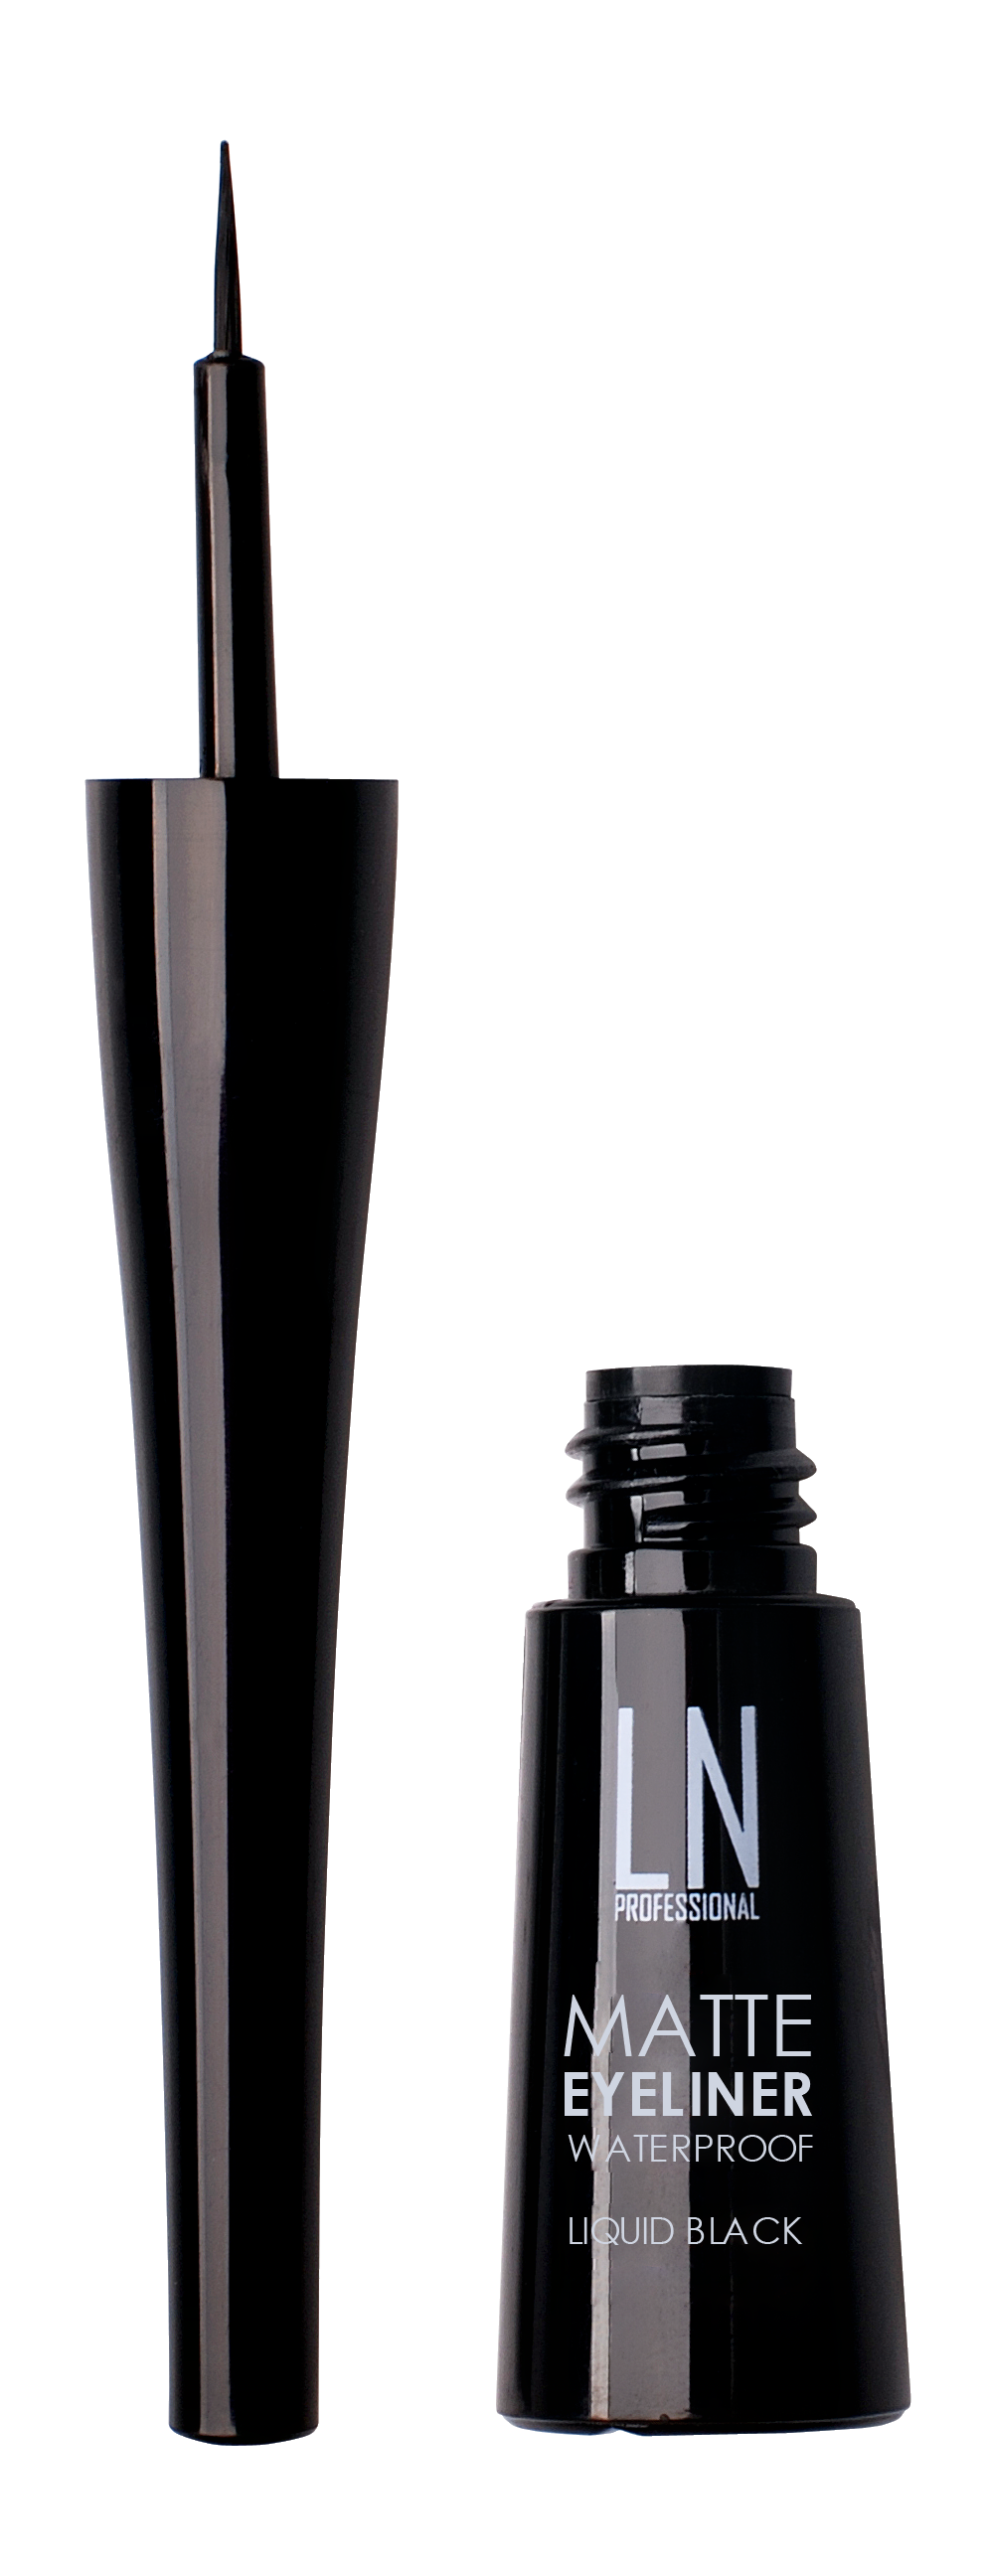 Жидкая матовая подводка для глаз LN Professional Matte Eyeliner Waterproof Liquid Black, тон 01, 3,5 мл - фото 2